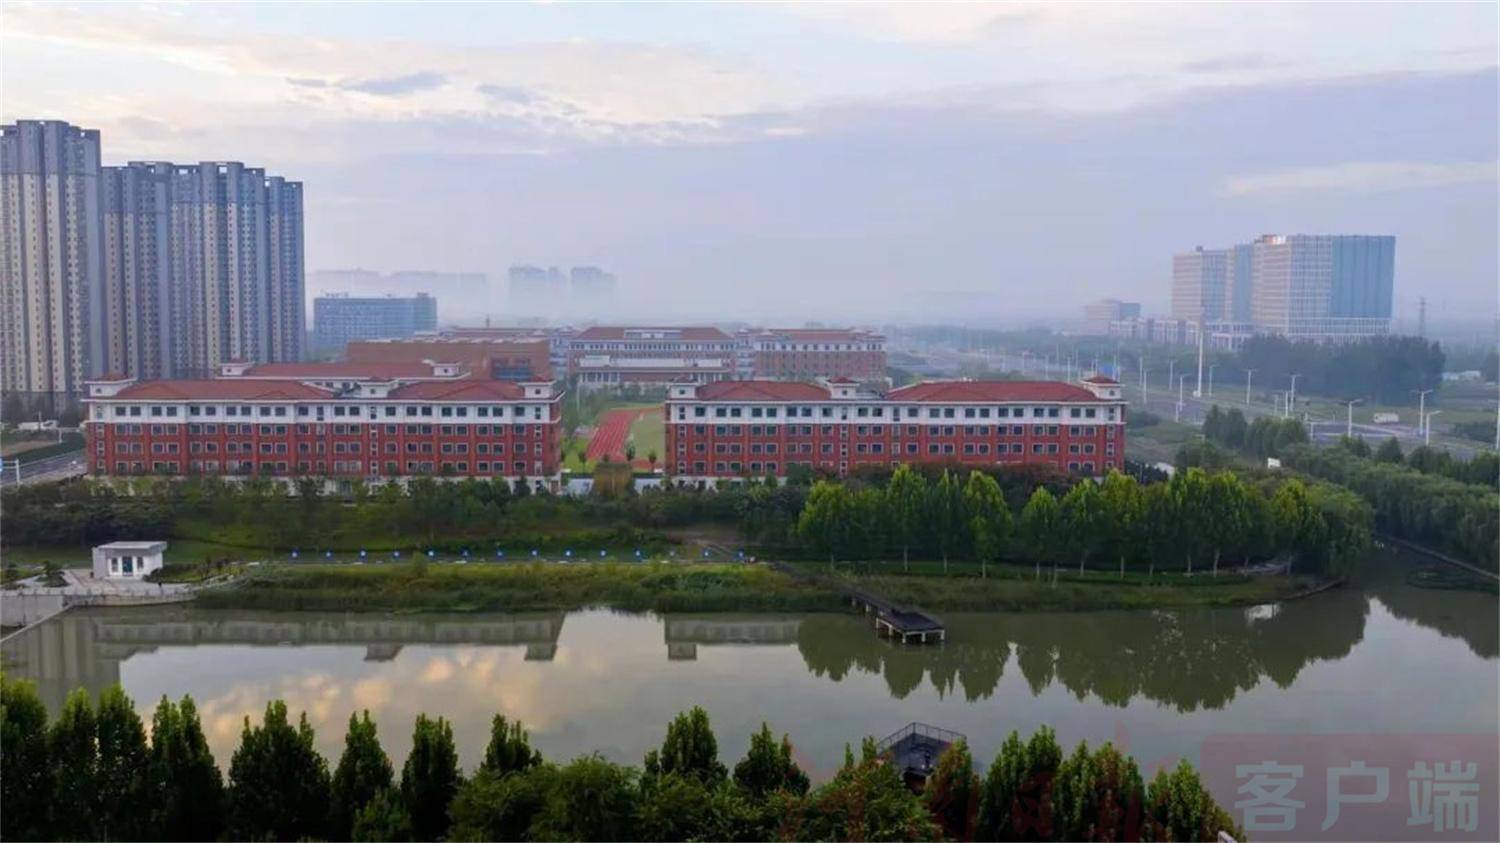 5月22日,郑州航空港经济综合实验区外国语高级中学校园